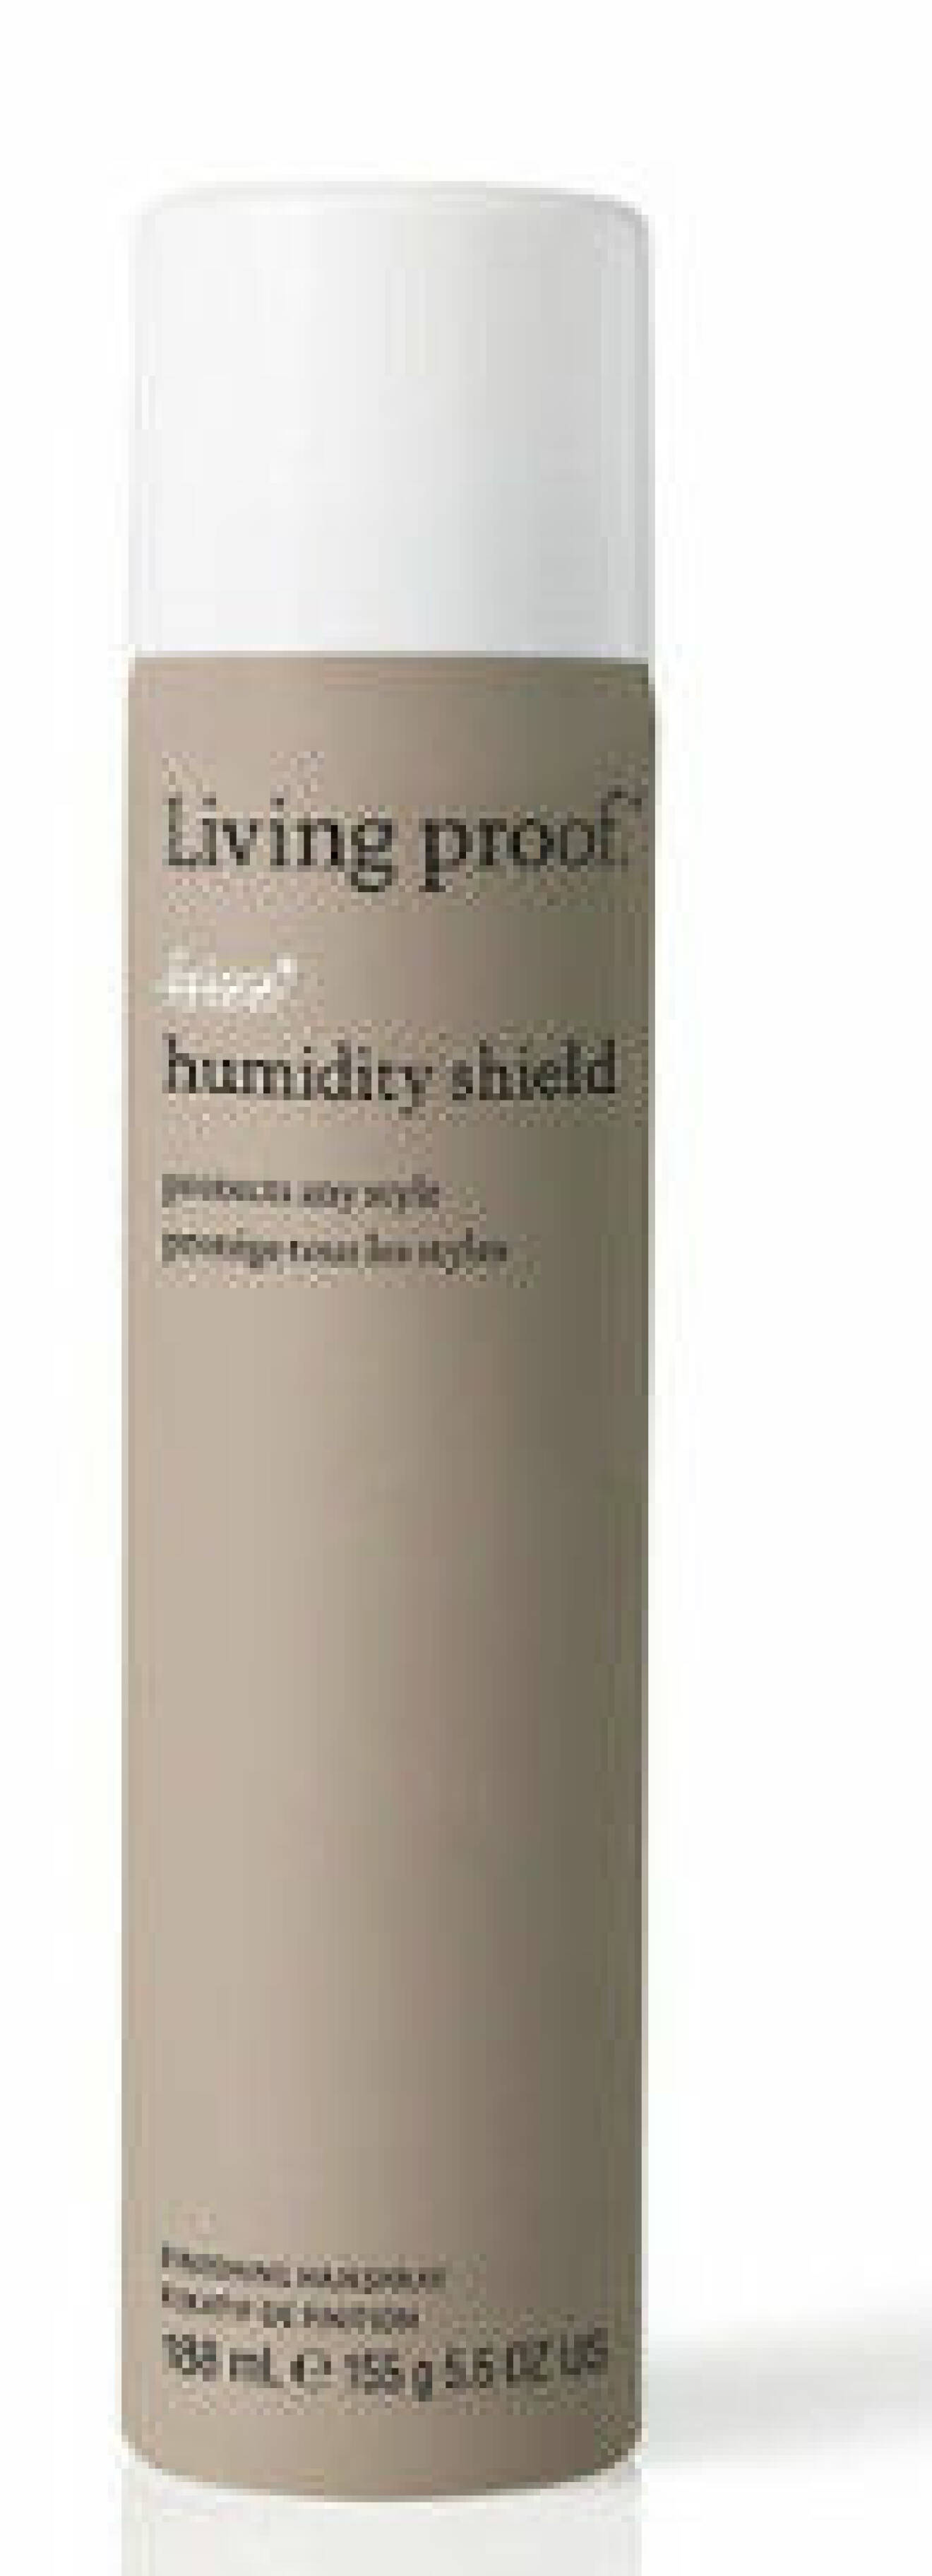 Humidity Shield är en hårspray från Living Proof som blockerar fukt